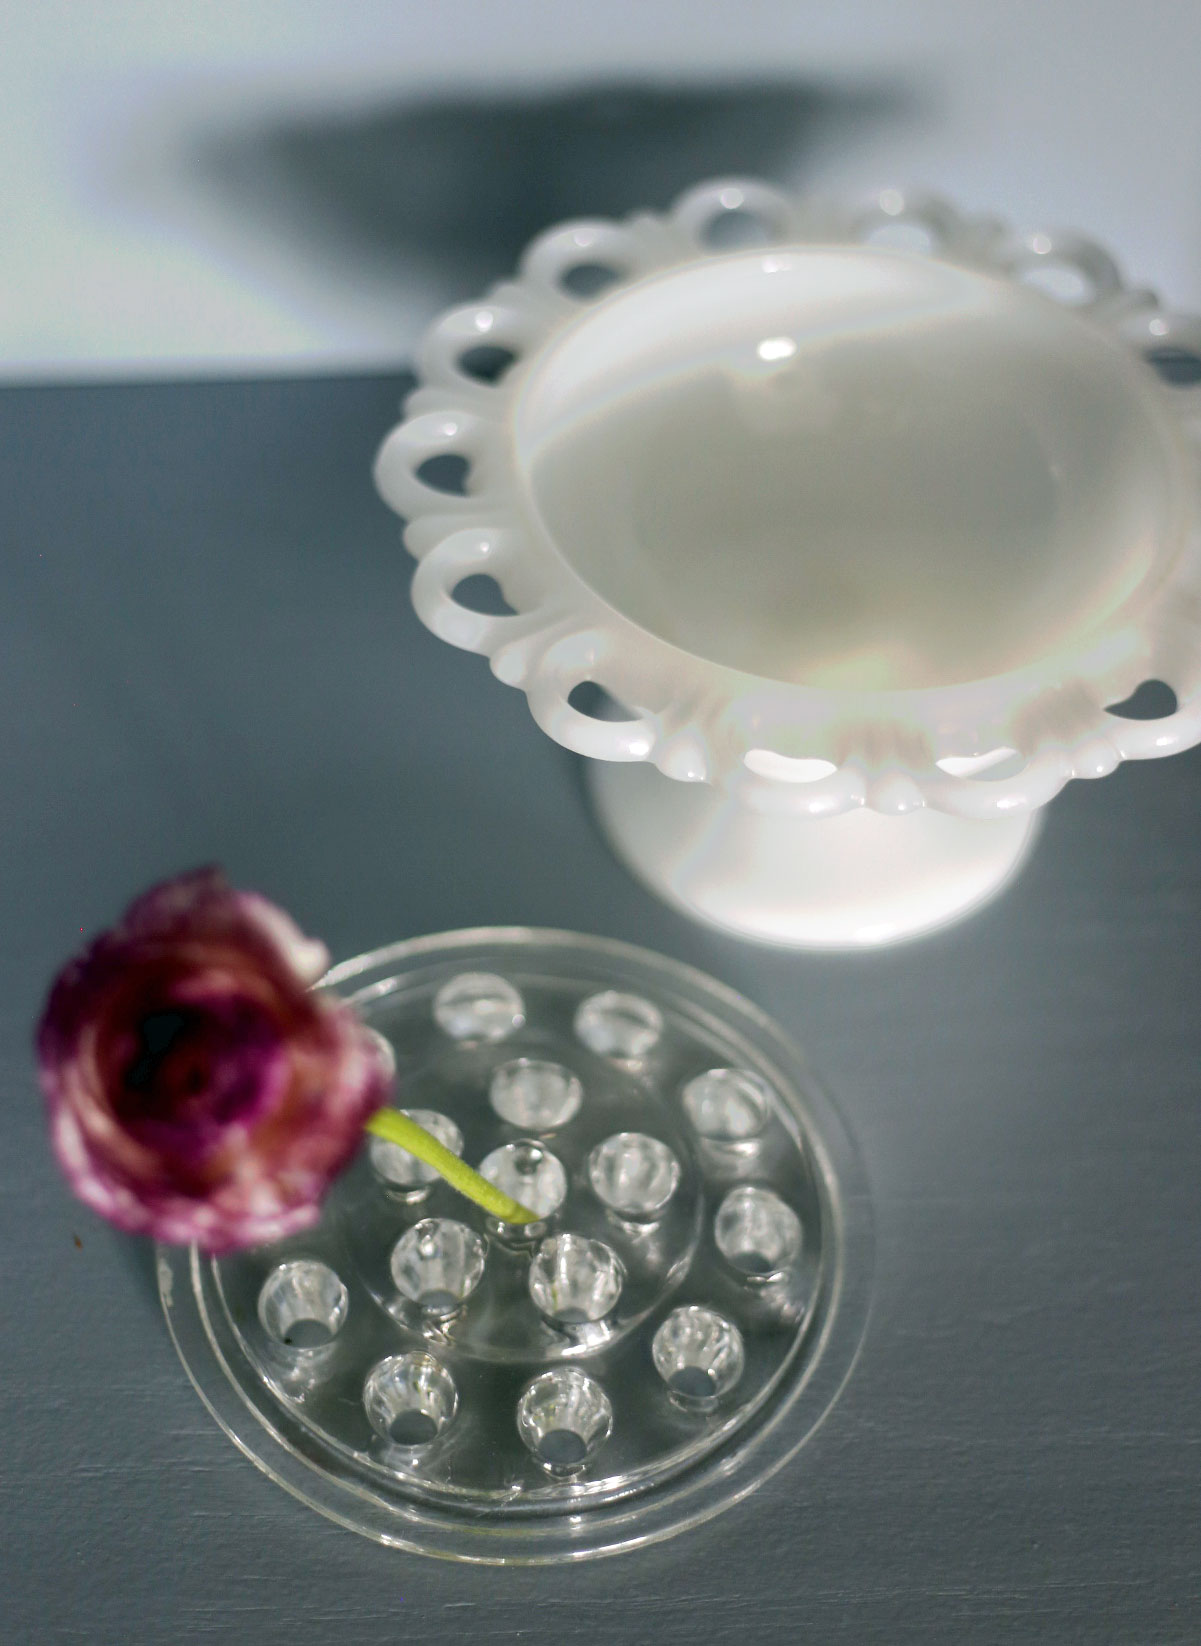 Stor blomsterfakir i glas med skål